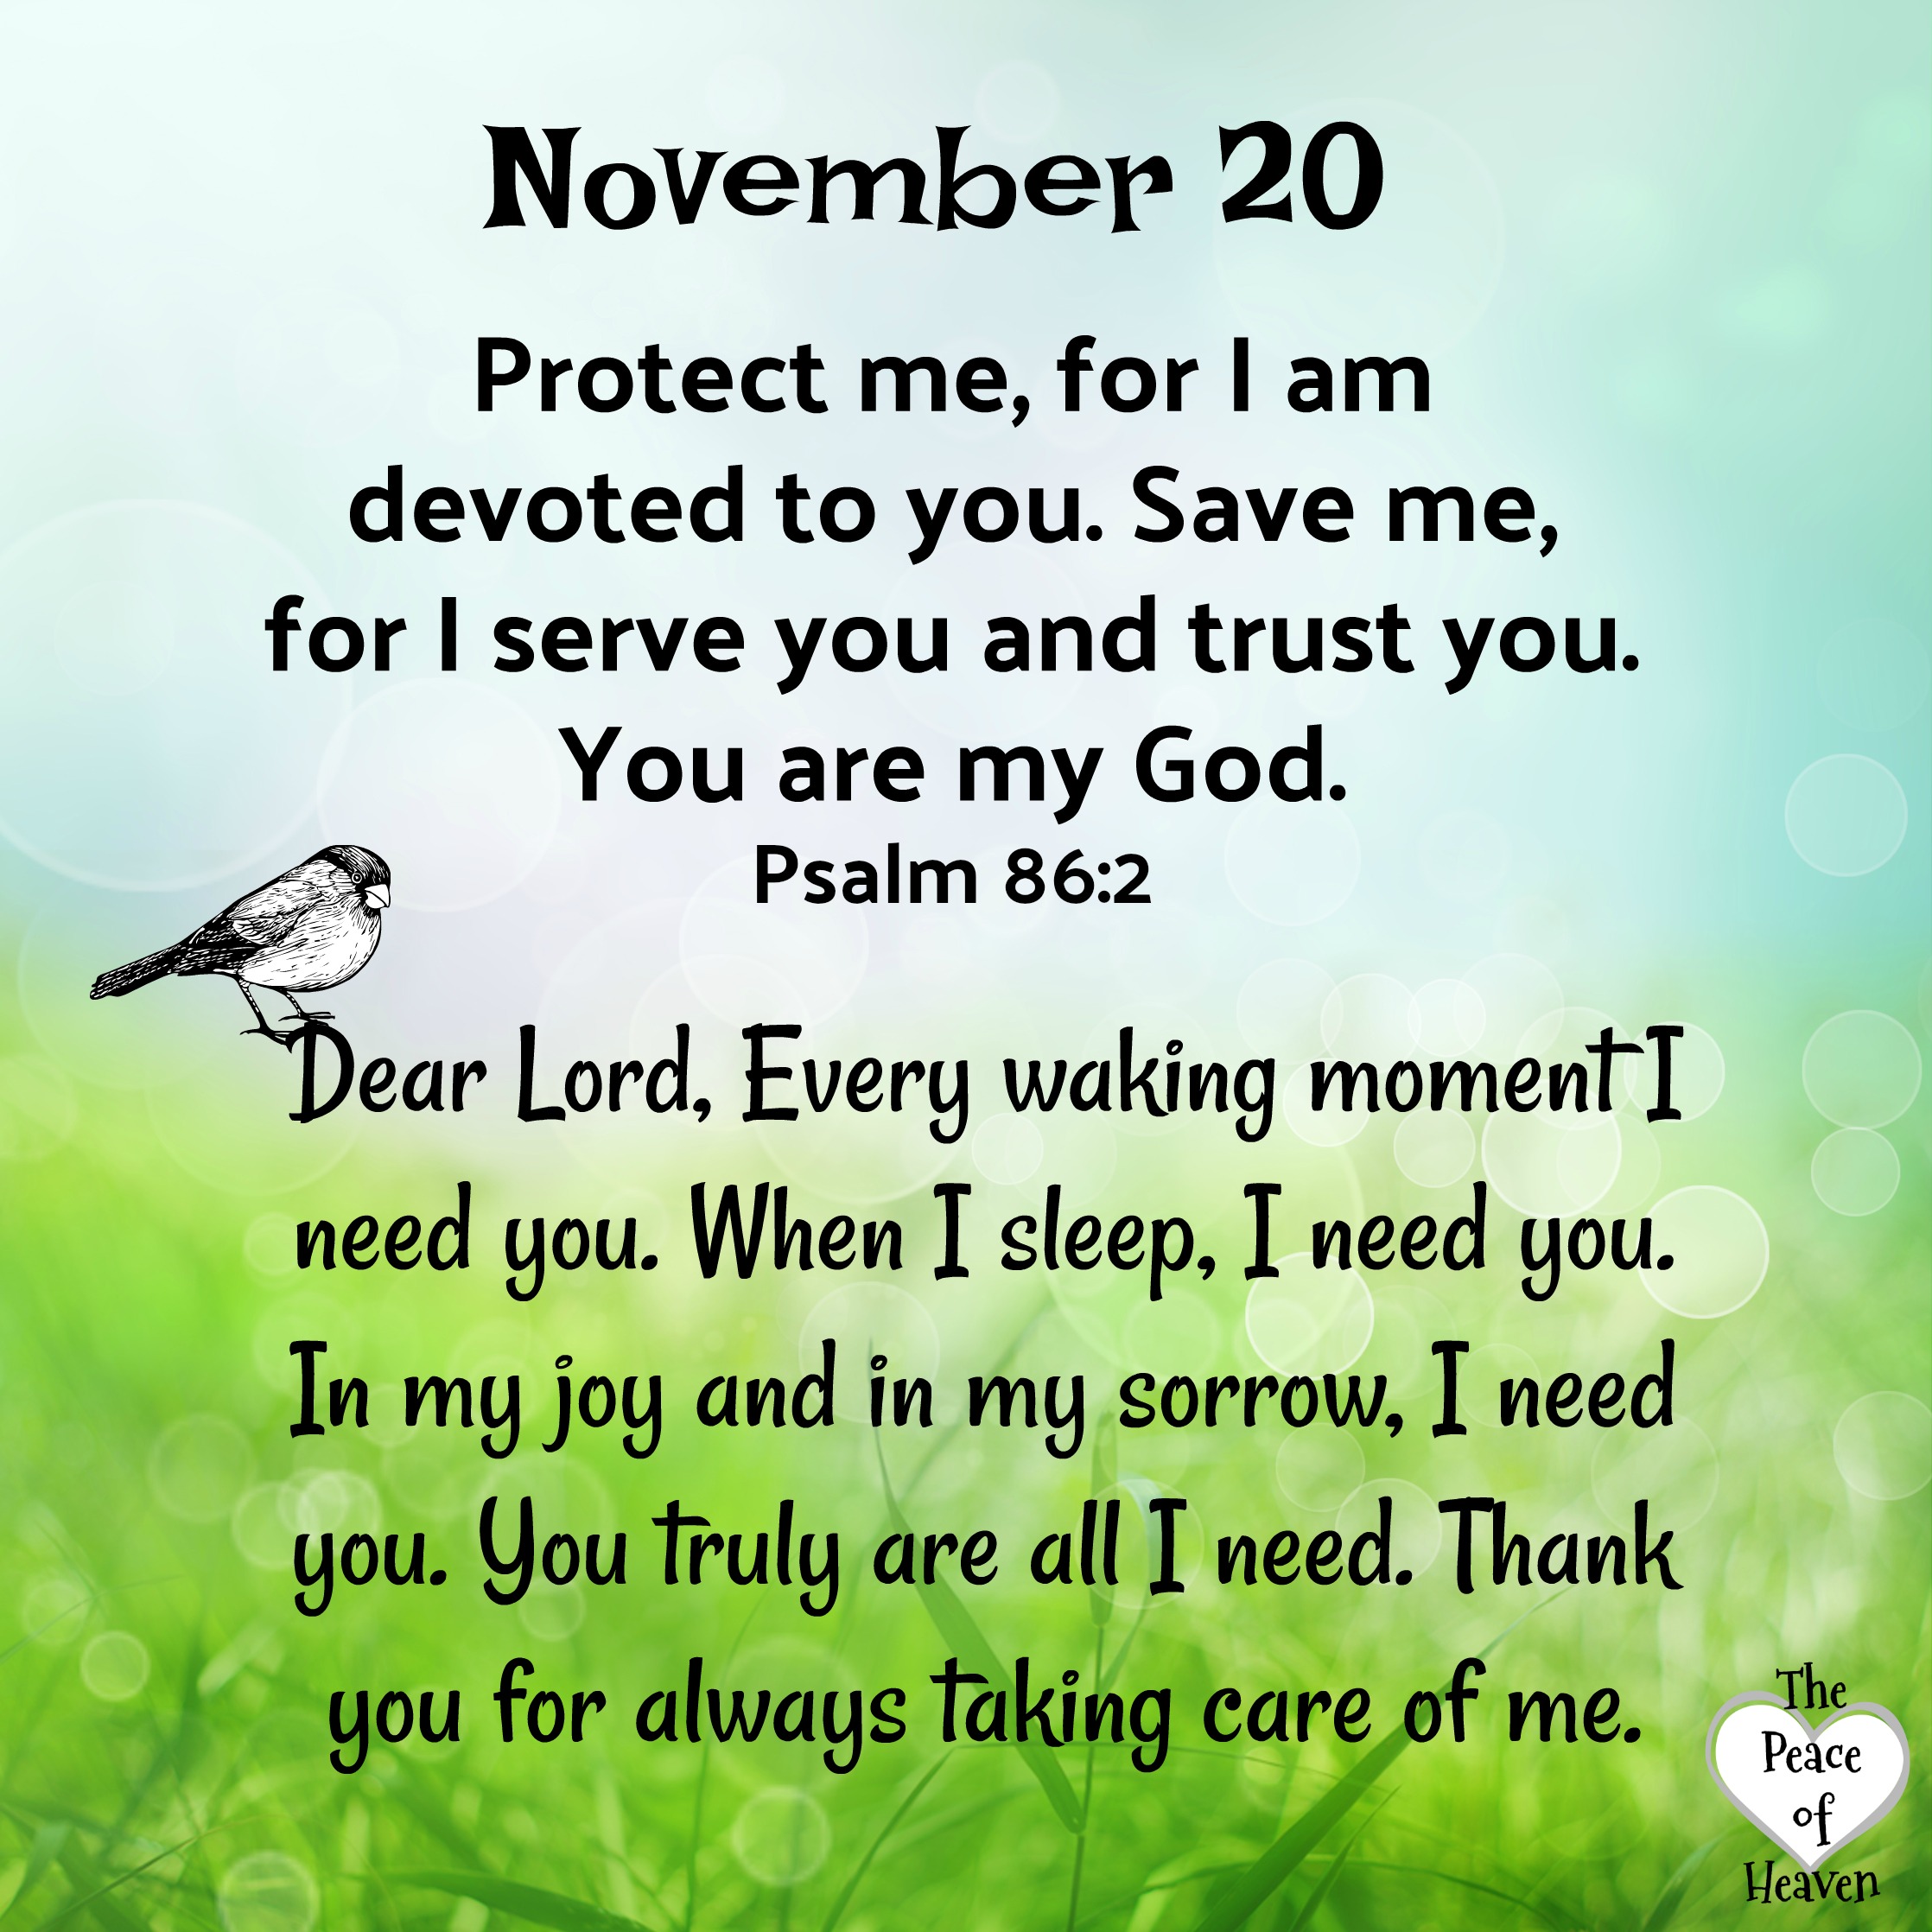 November 20 – The Peace of Heaven